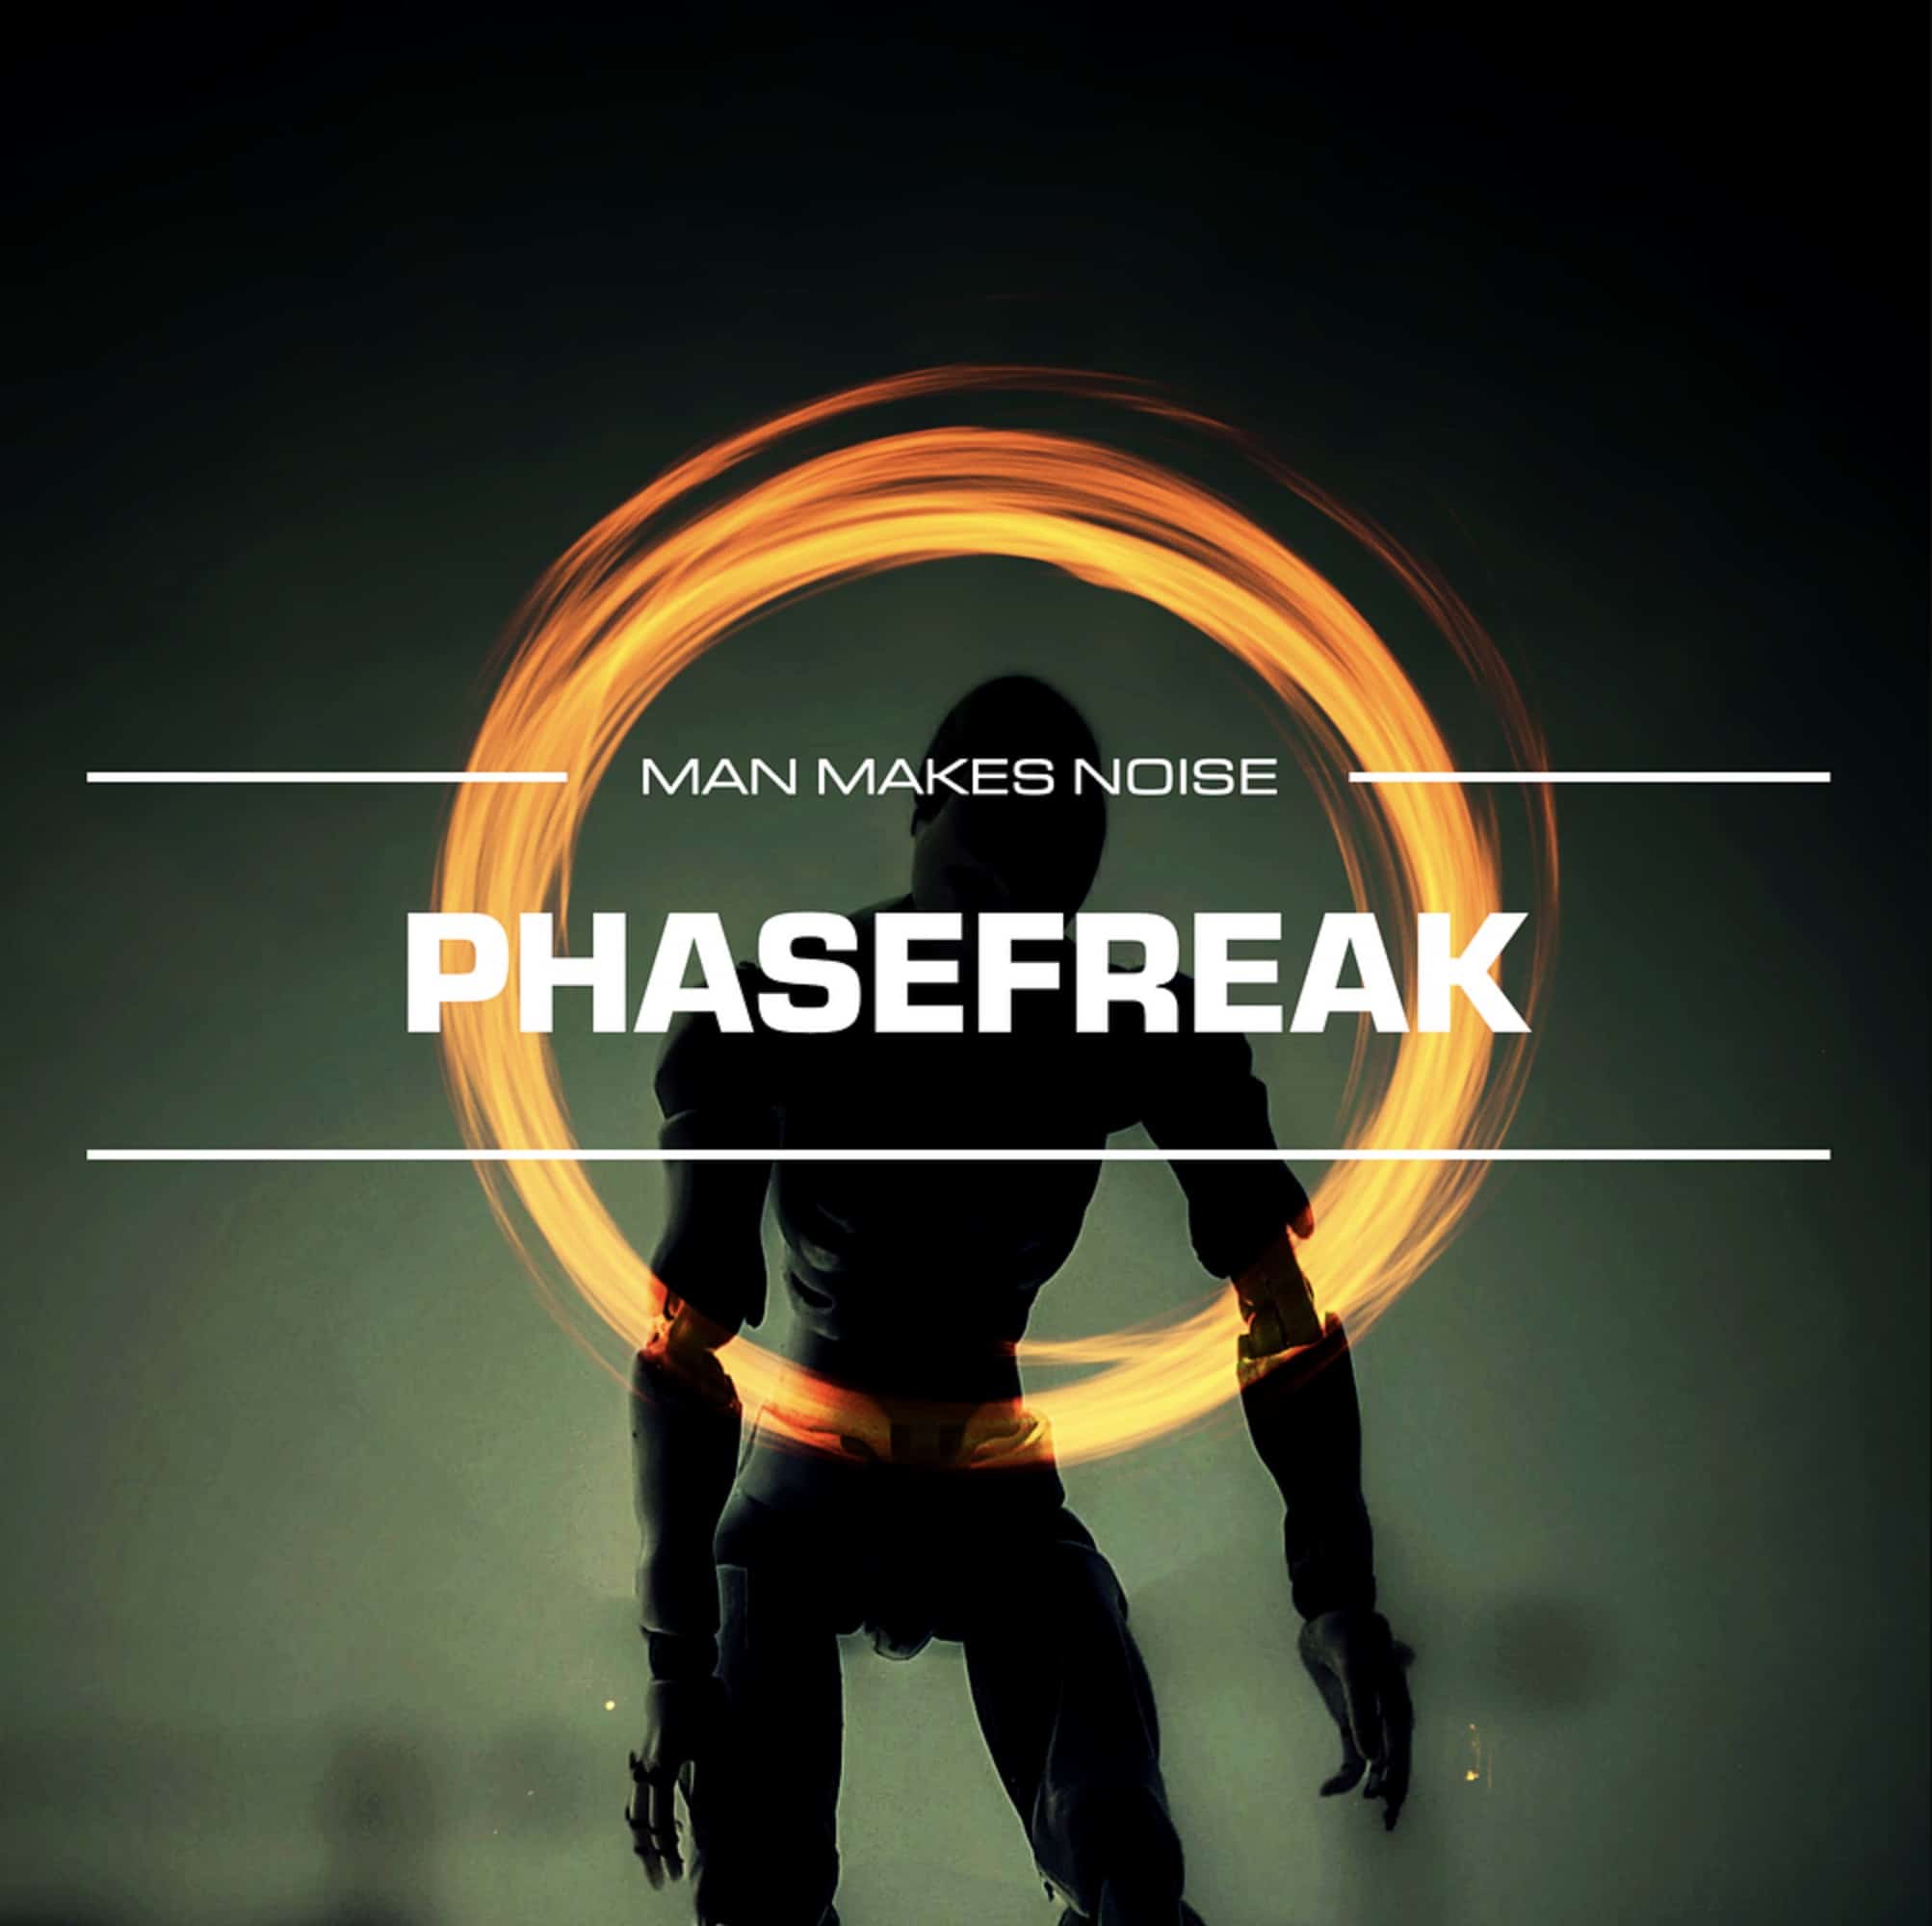 PHASEFREAK Soundset for Phase Plant – Meet the Freak